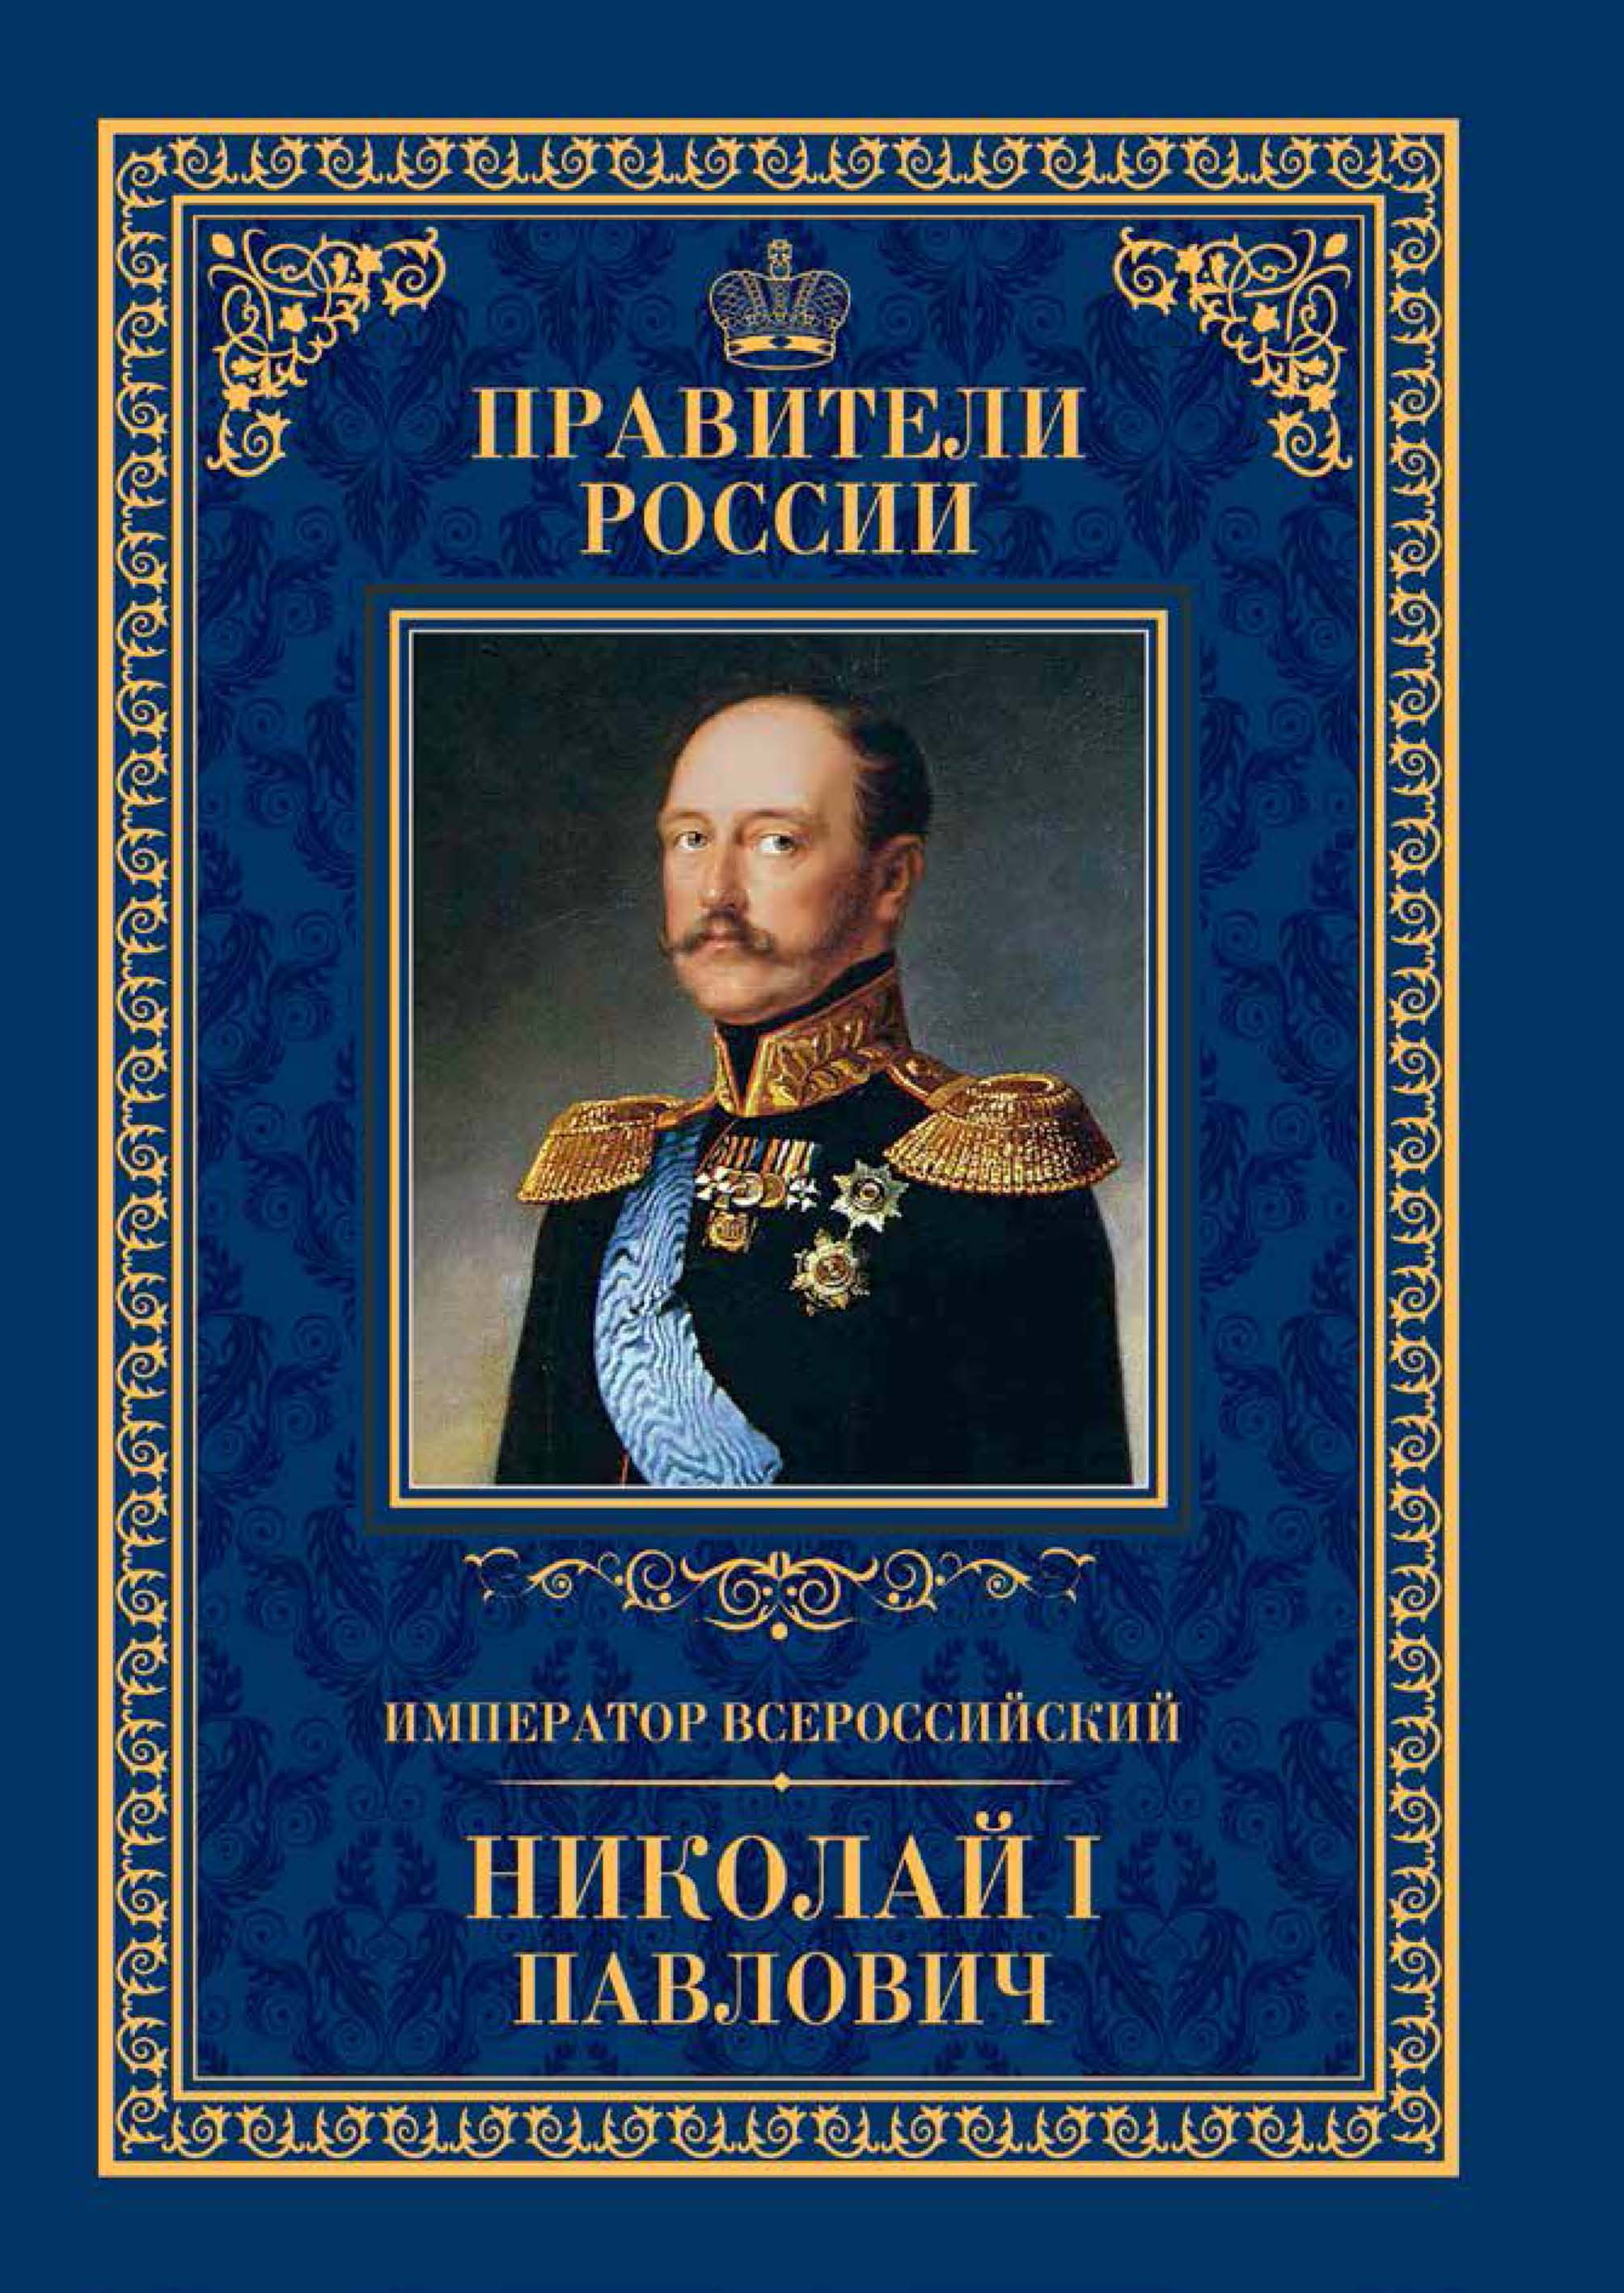 Книга про императора. Правители России с Николая 1.